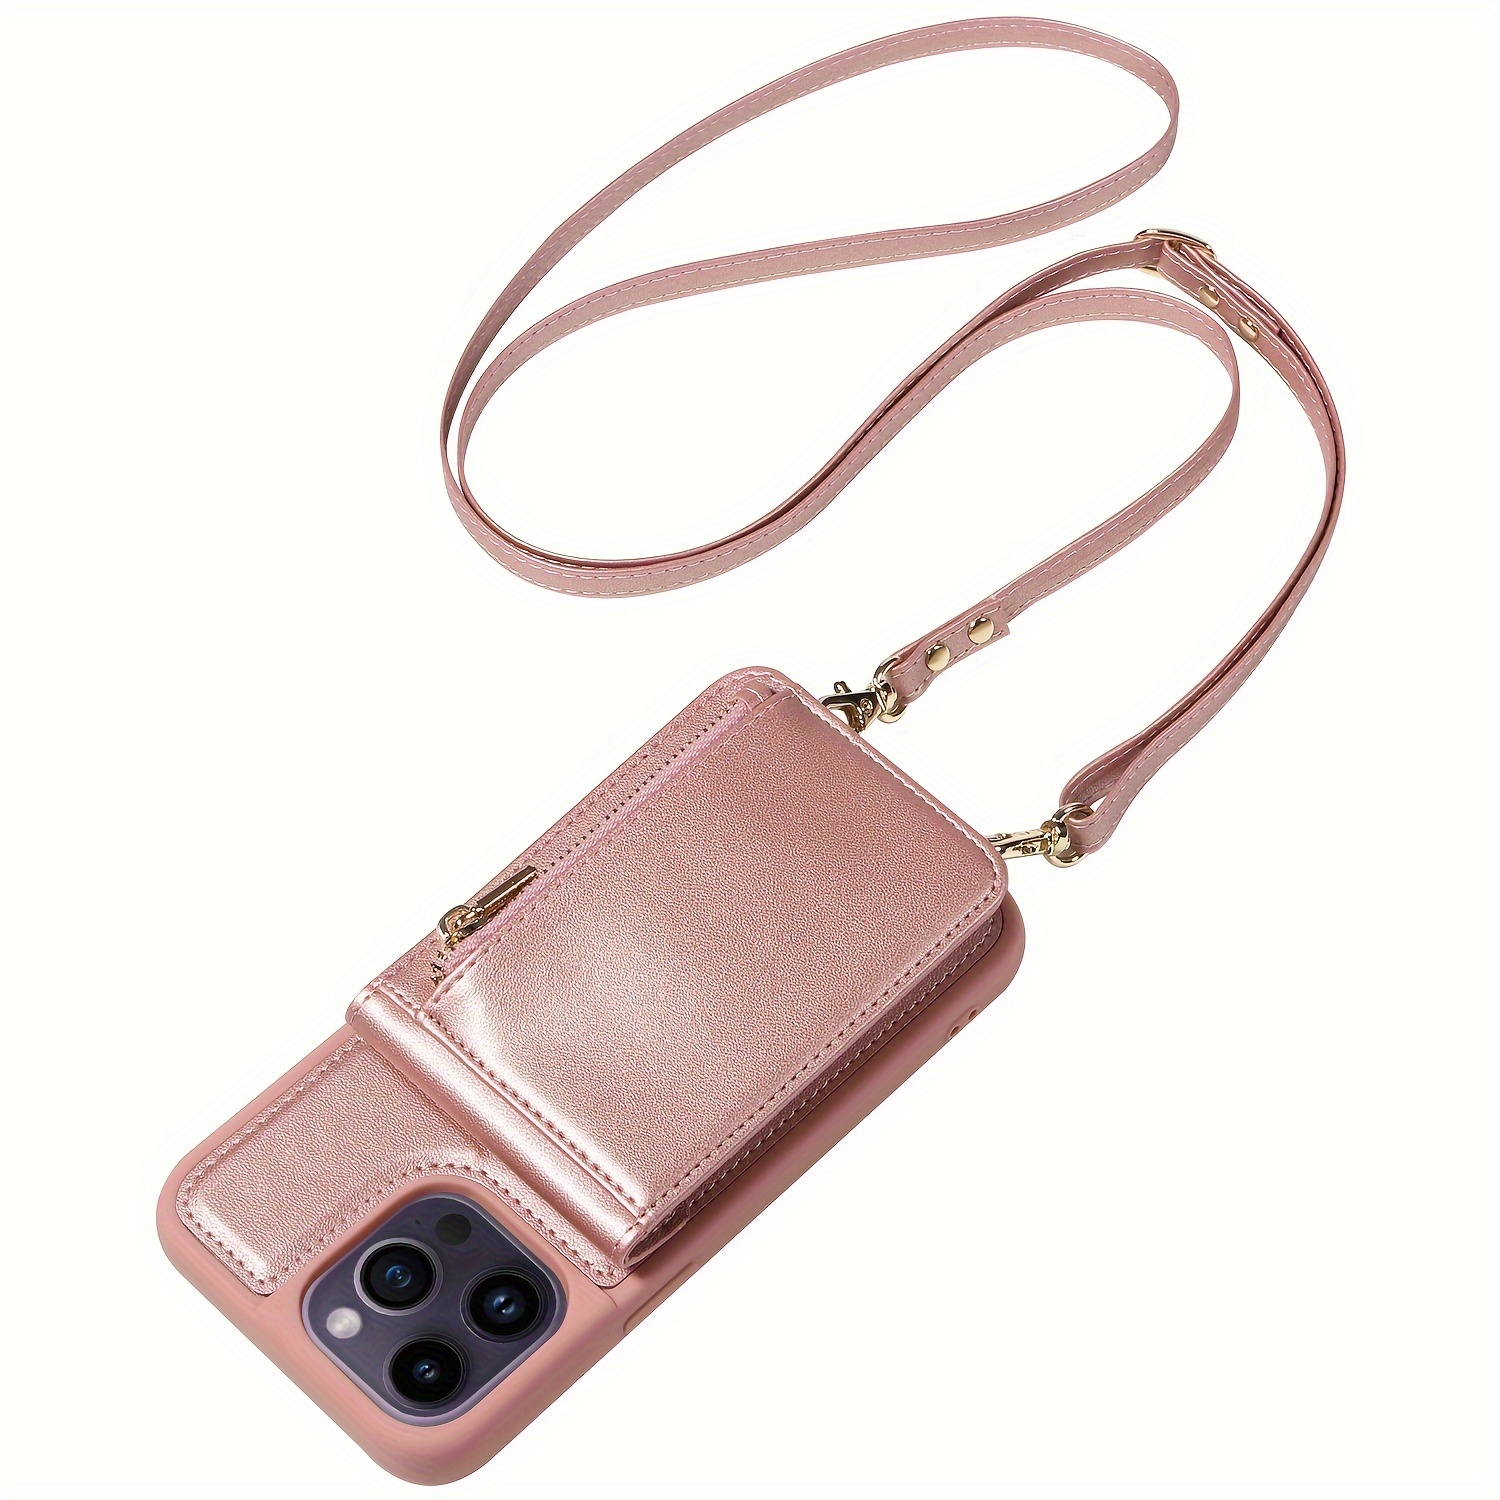 Increíble cinturón de correr para iPhone 6 Plus para correr, guarda  tarjetas de crédito, efectivo, maquillaje, identificación, cintura para  correr y